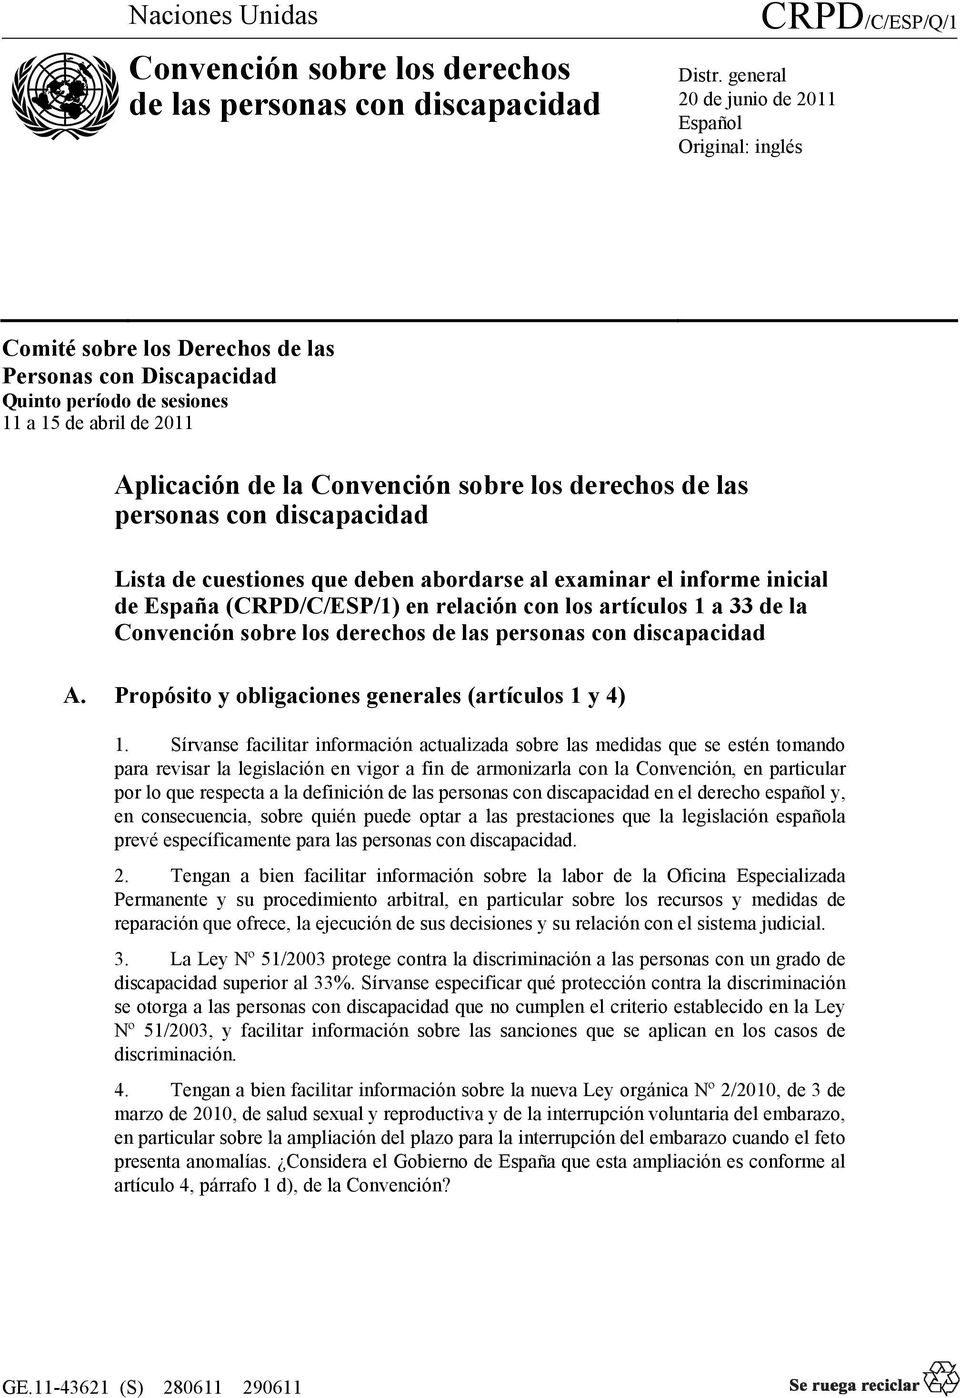 Convención sobre los derechos de las personas con discapacidad Lista de cuestiones que deben abordarse al examinar el informe inicial de España (CRPD/C/ESP/1) en relación con los artículos 1 a 33 de